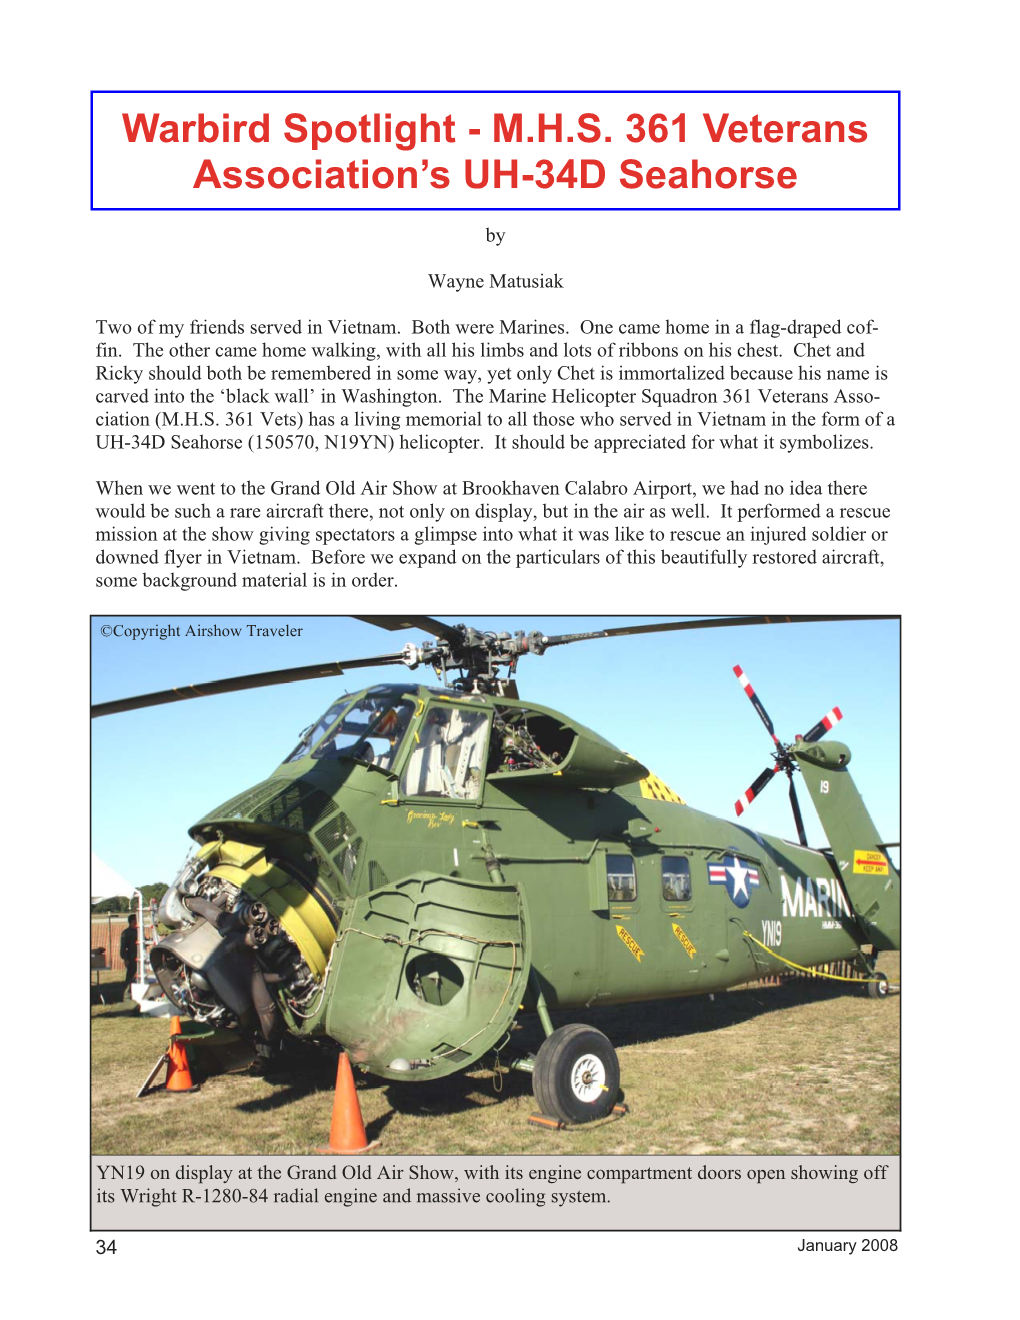 MHS 361 Veterans Association's UH-34D Seahorse